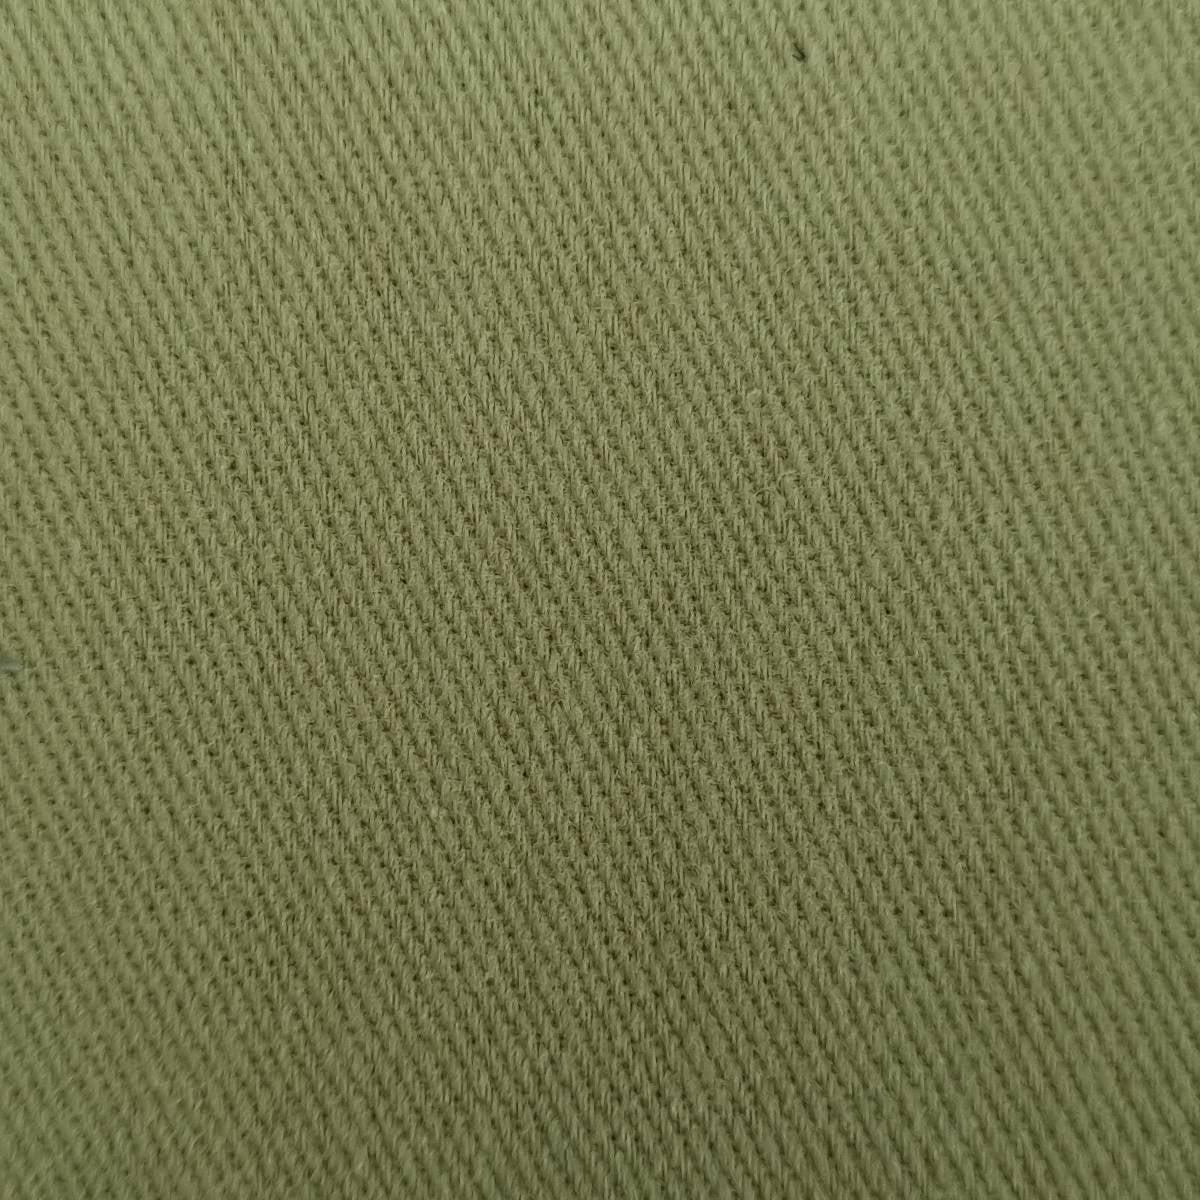 Cotton Woven Fabric-Coriander